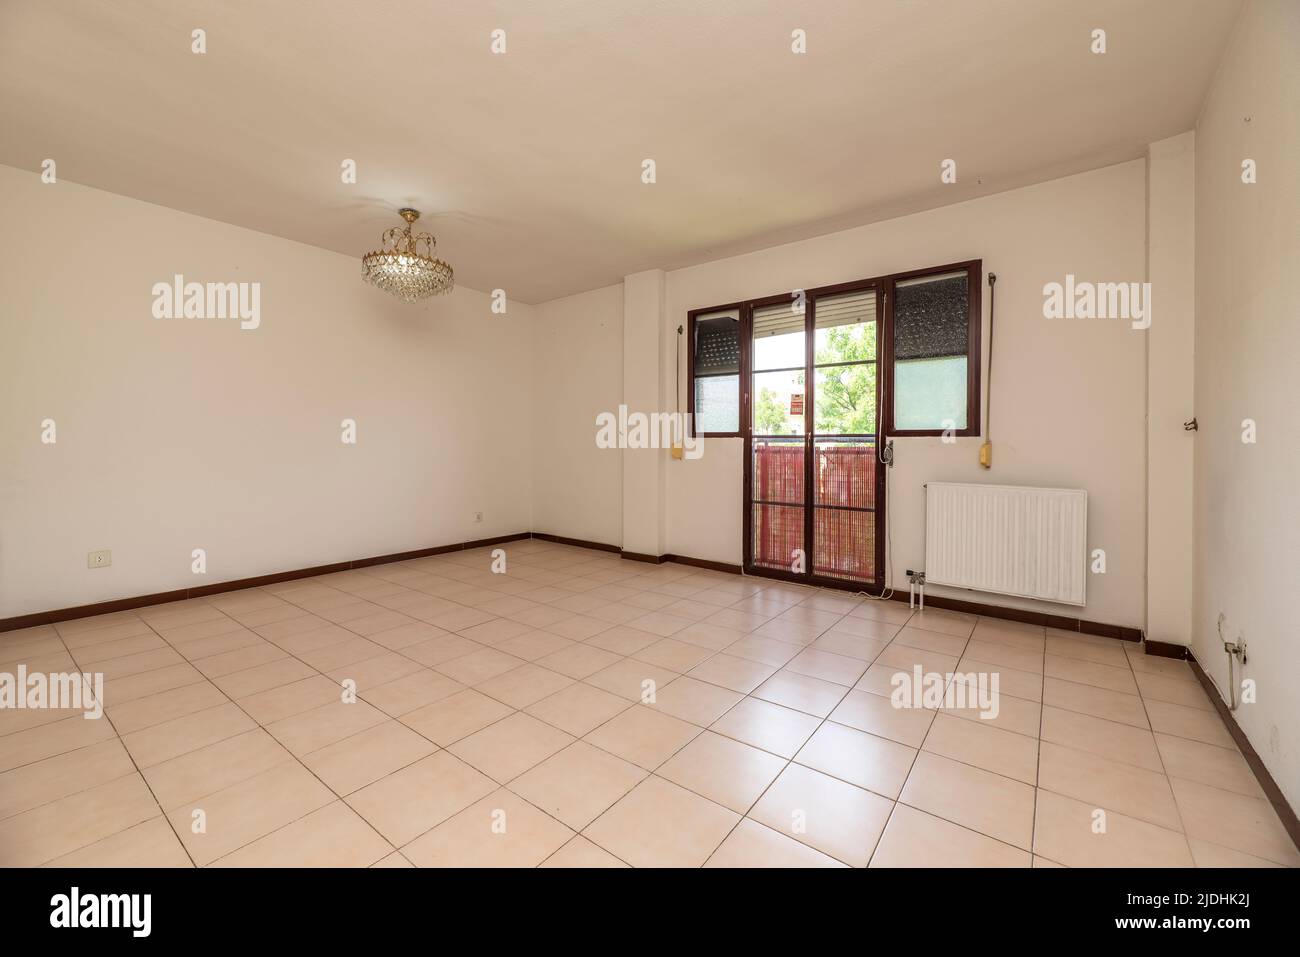 Empty room with square cream ceramic floor, dark red aluminum carpentry and aluminum radiators Stock Photo